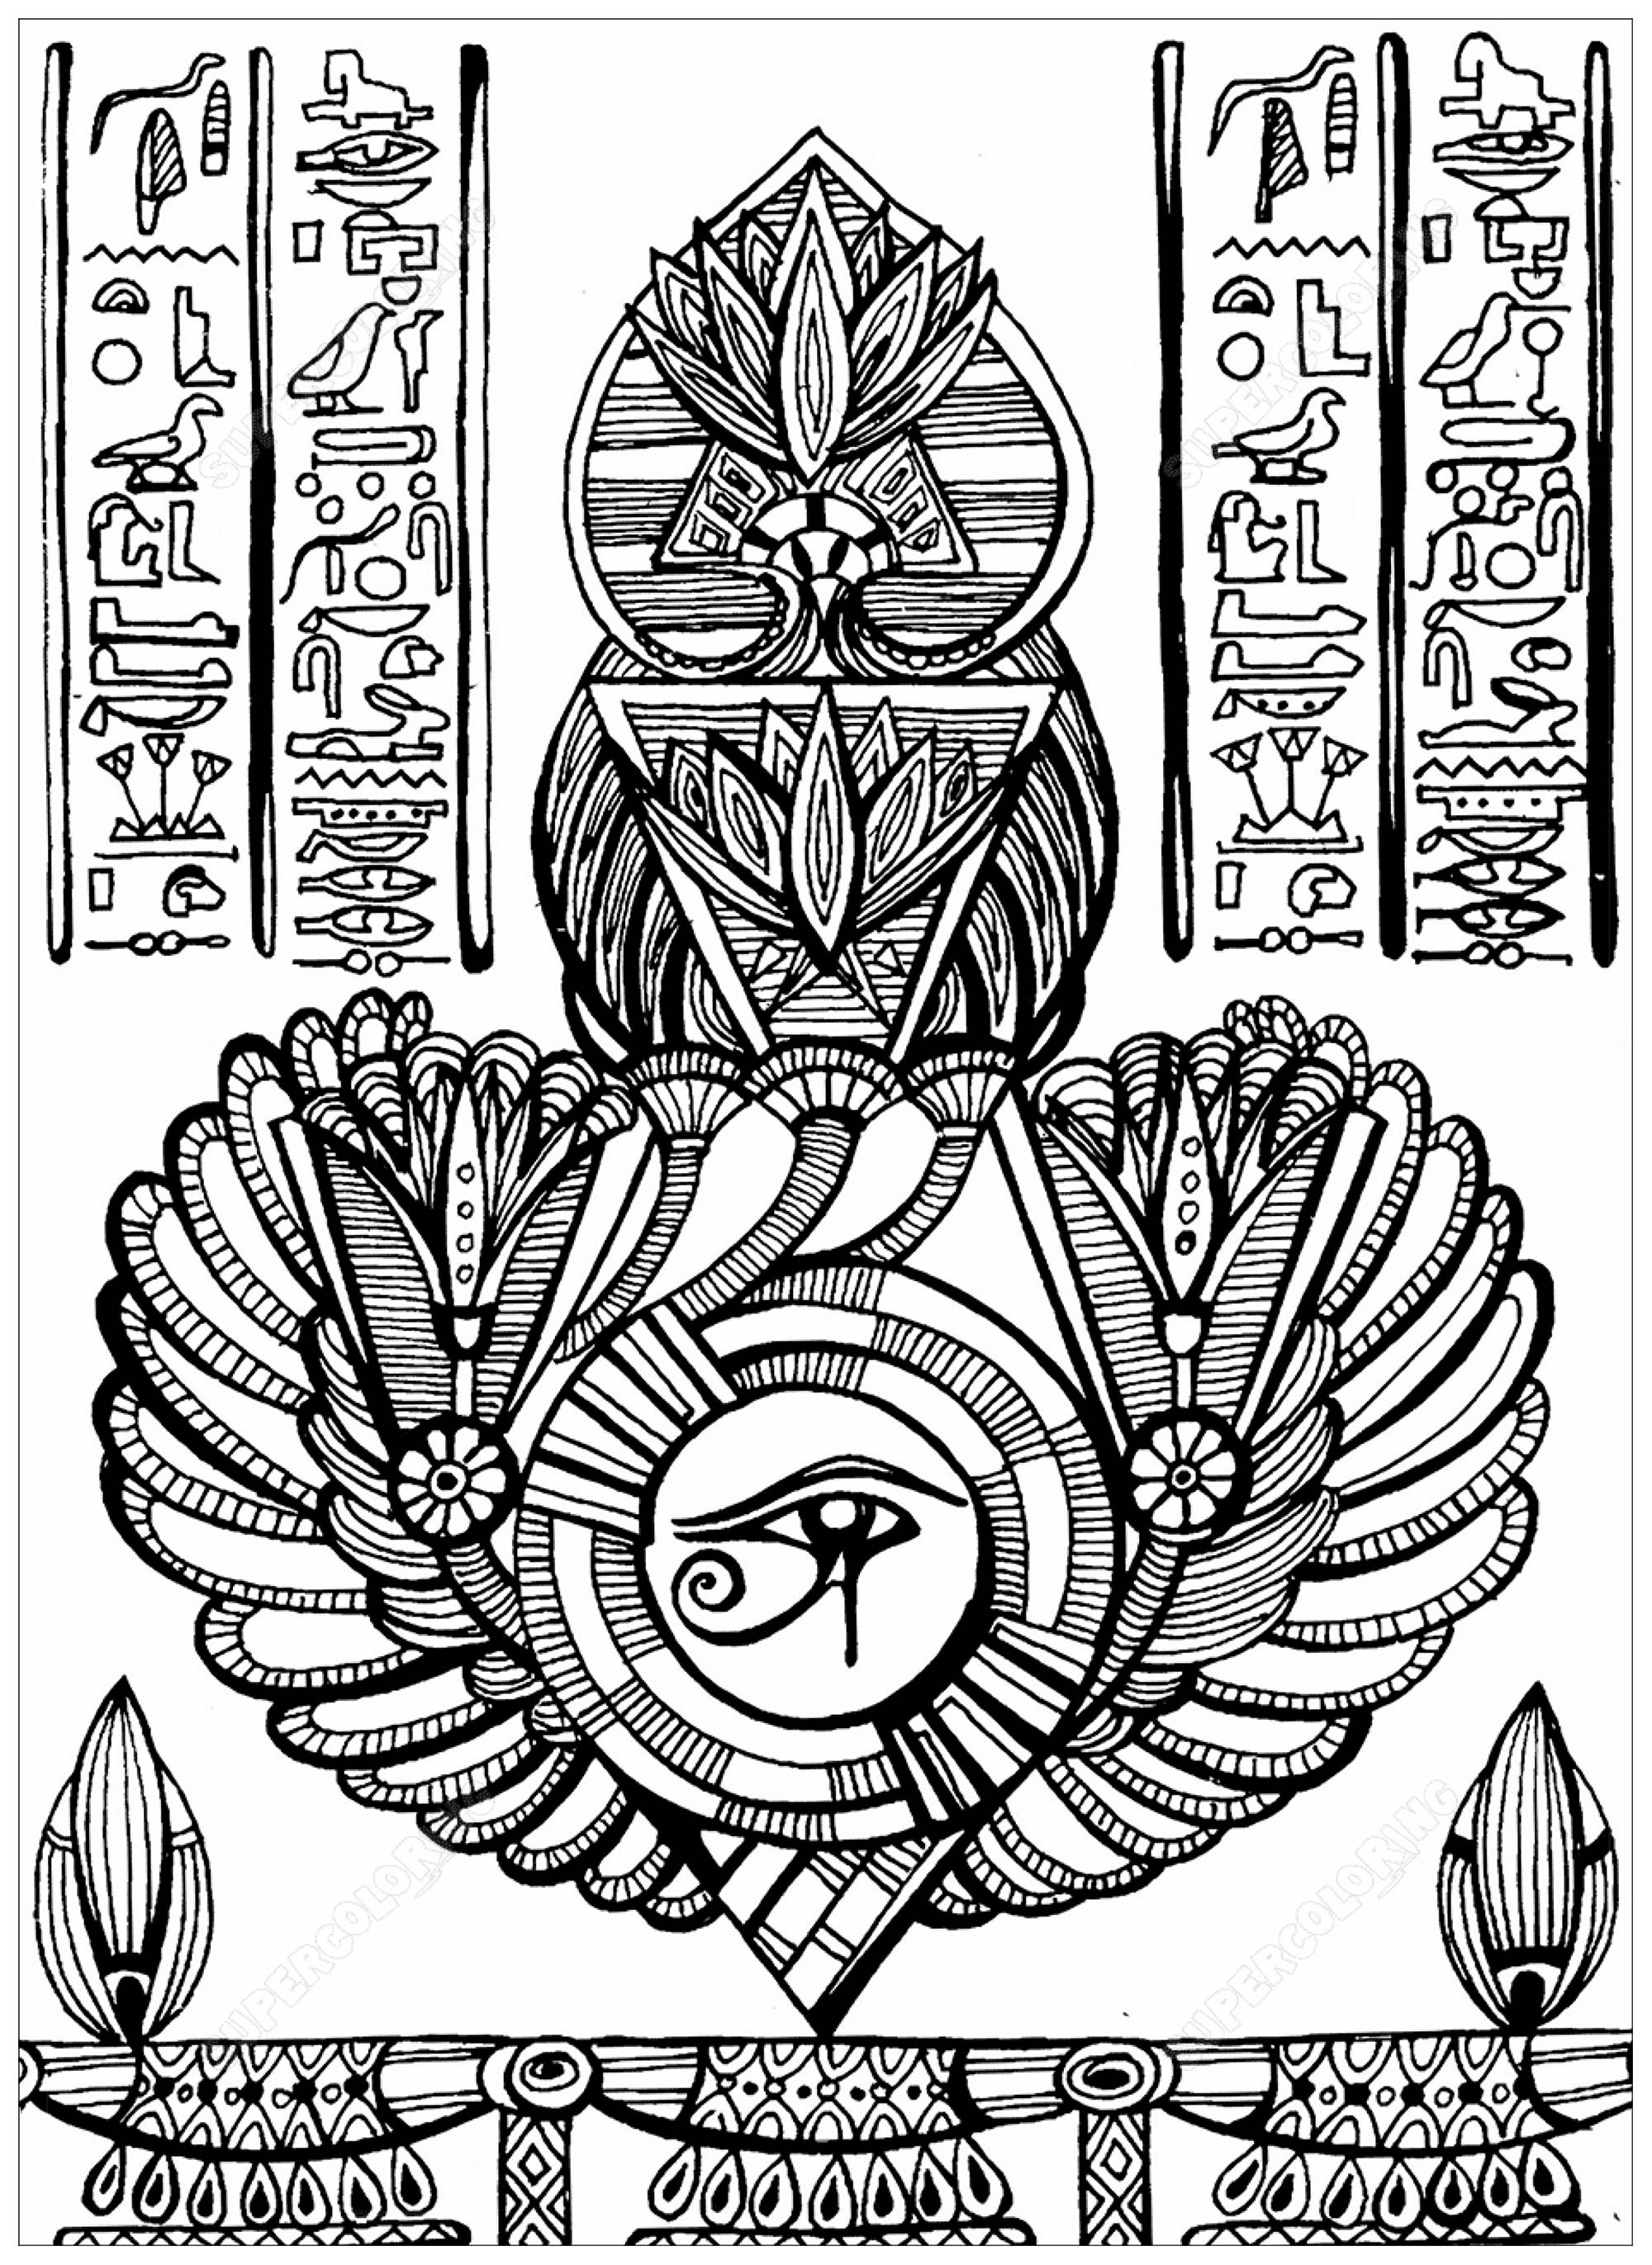 Olho de Hórus (antigo símbolo egípcio de proteção, poder real e boa saúde) e outros elementos